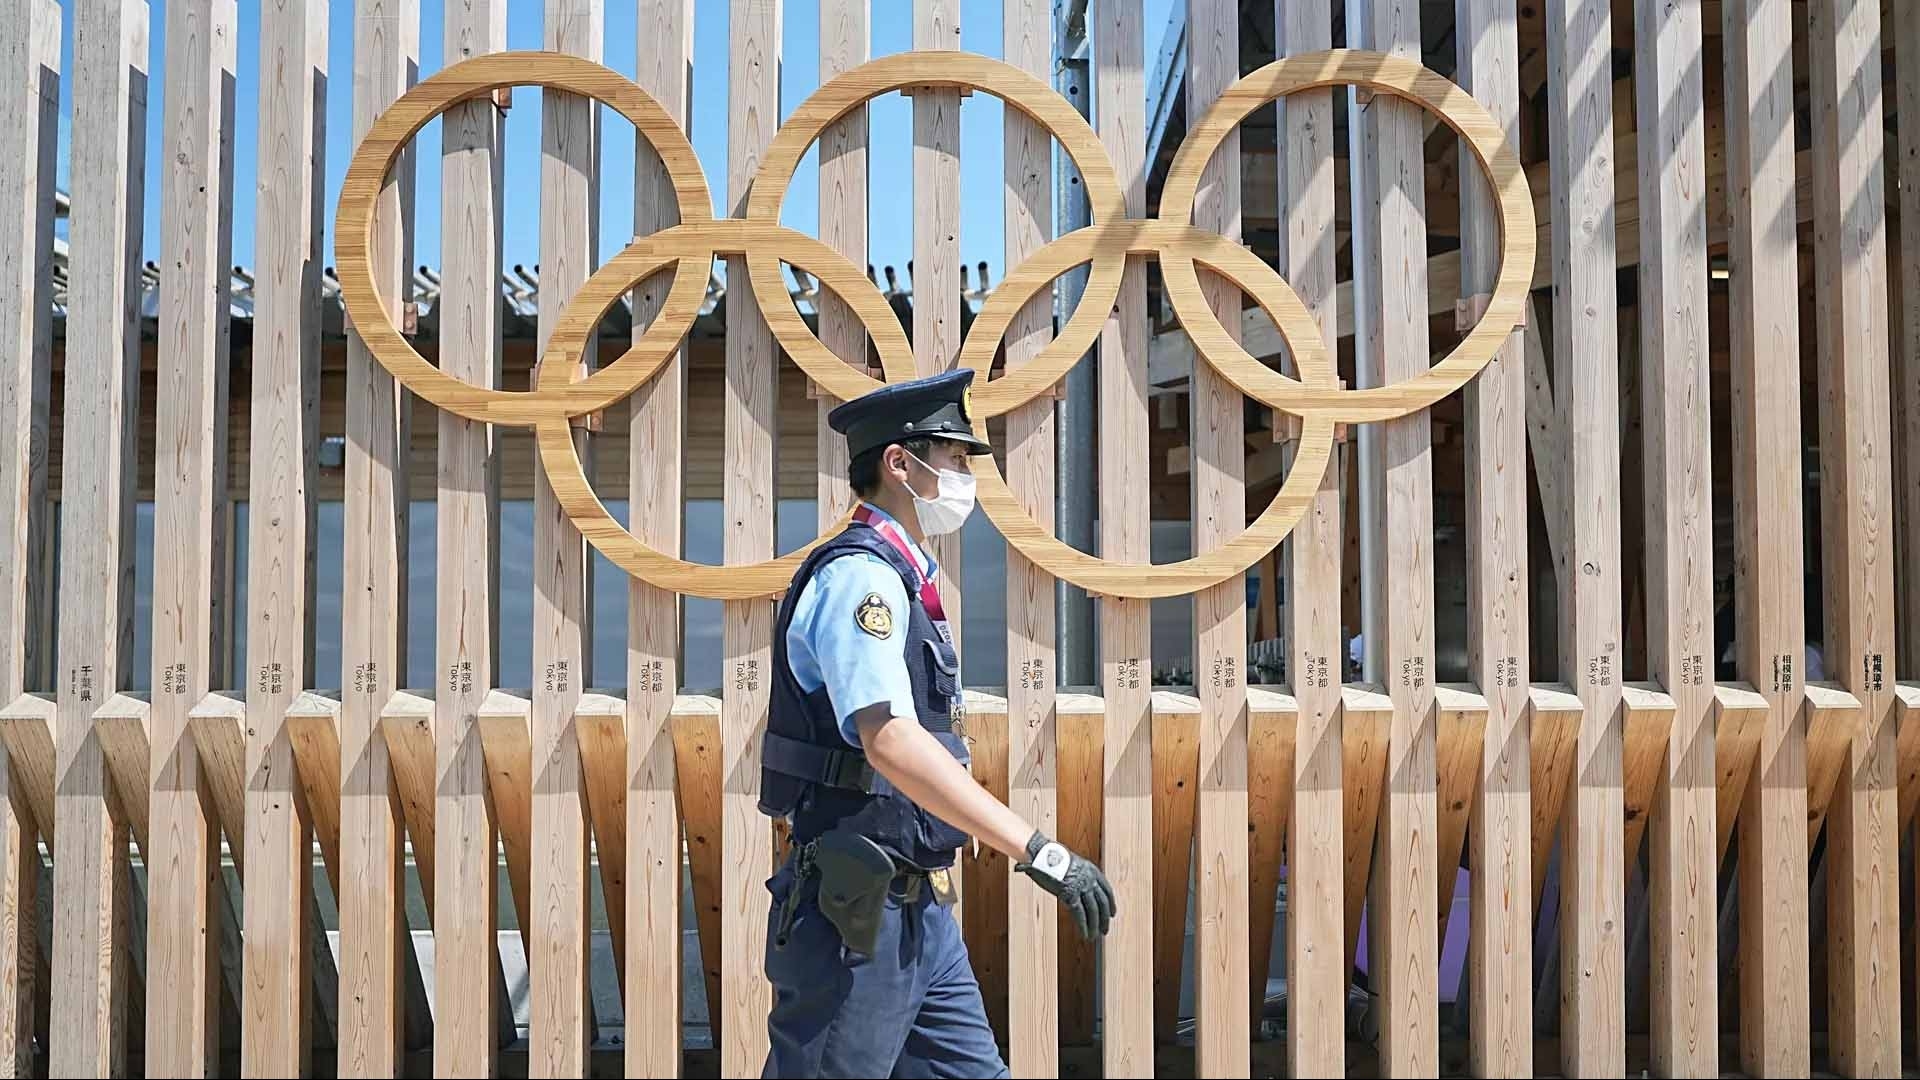 Olympic Tokyo 2020: Đập tan hoài nghi sự kiện ‘siêu lây nhiễm’